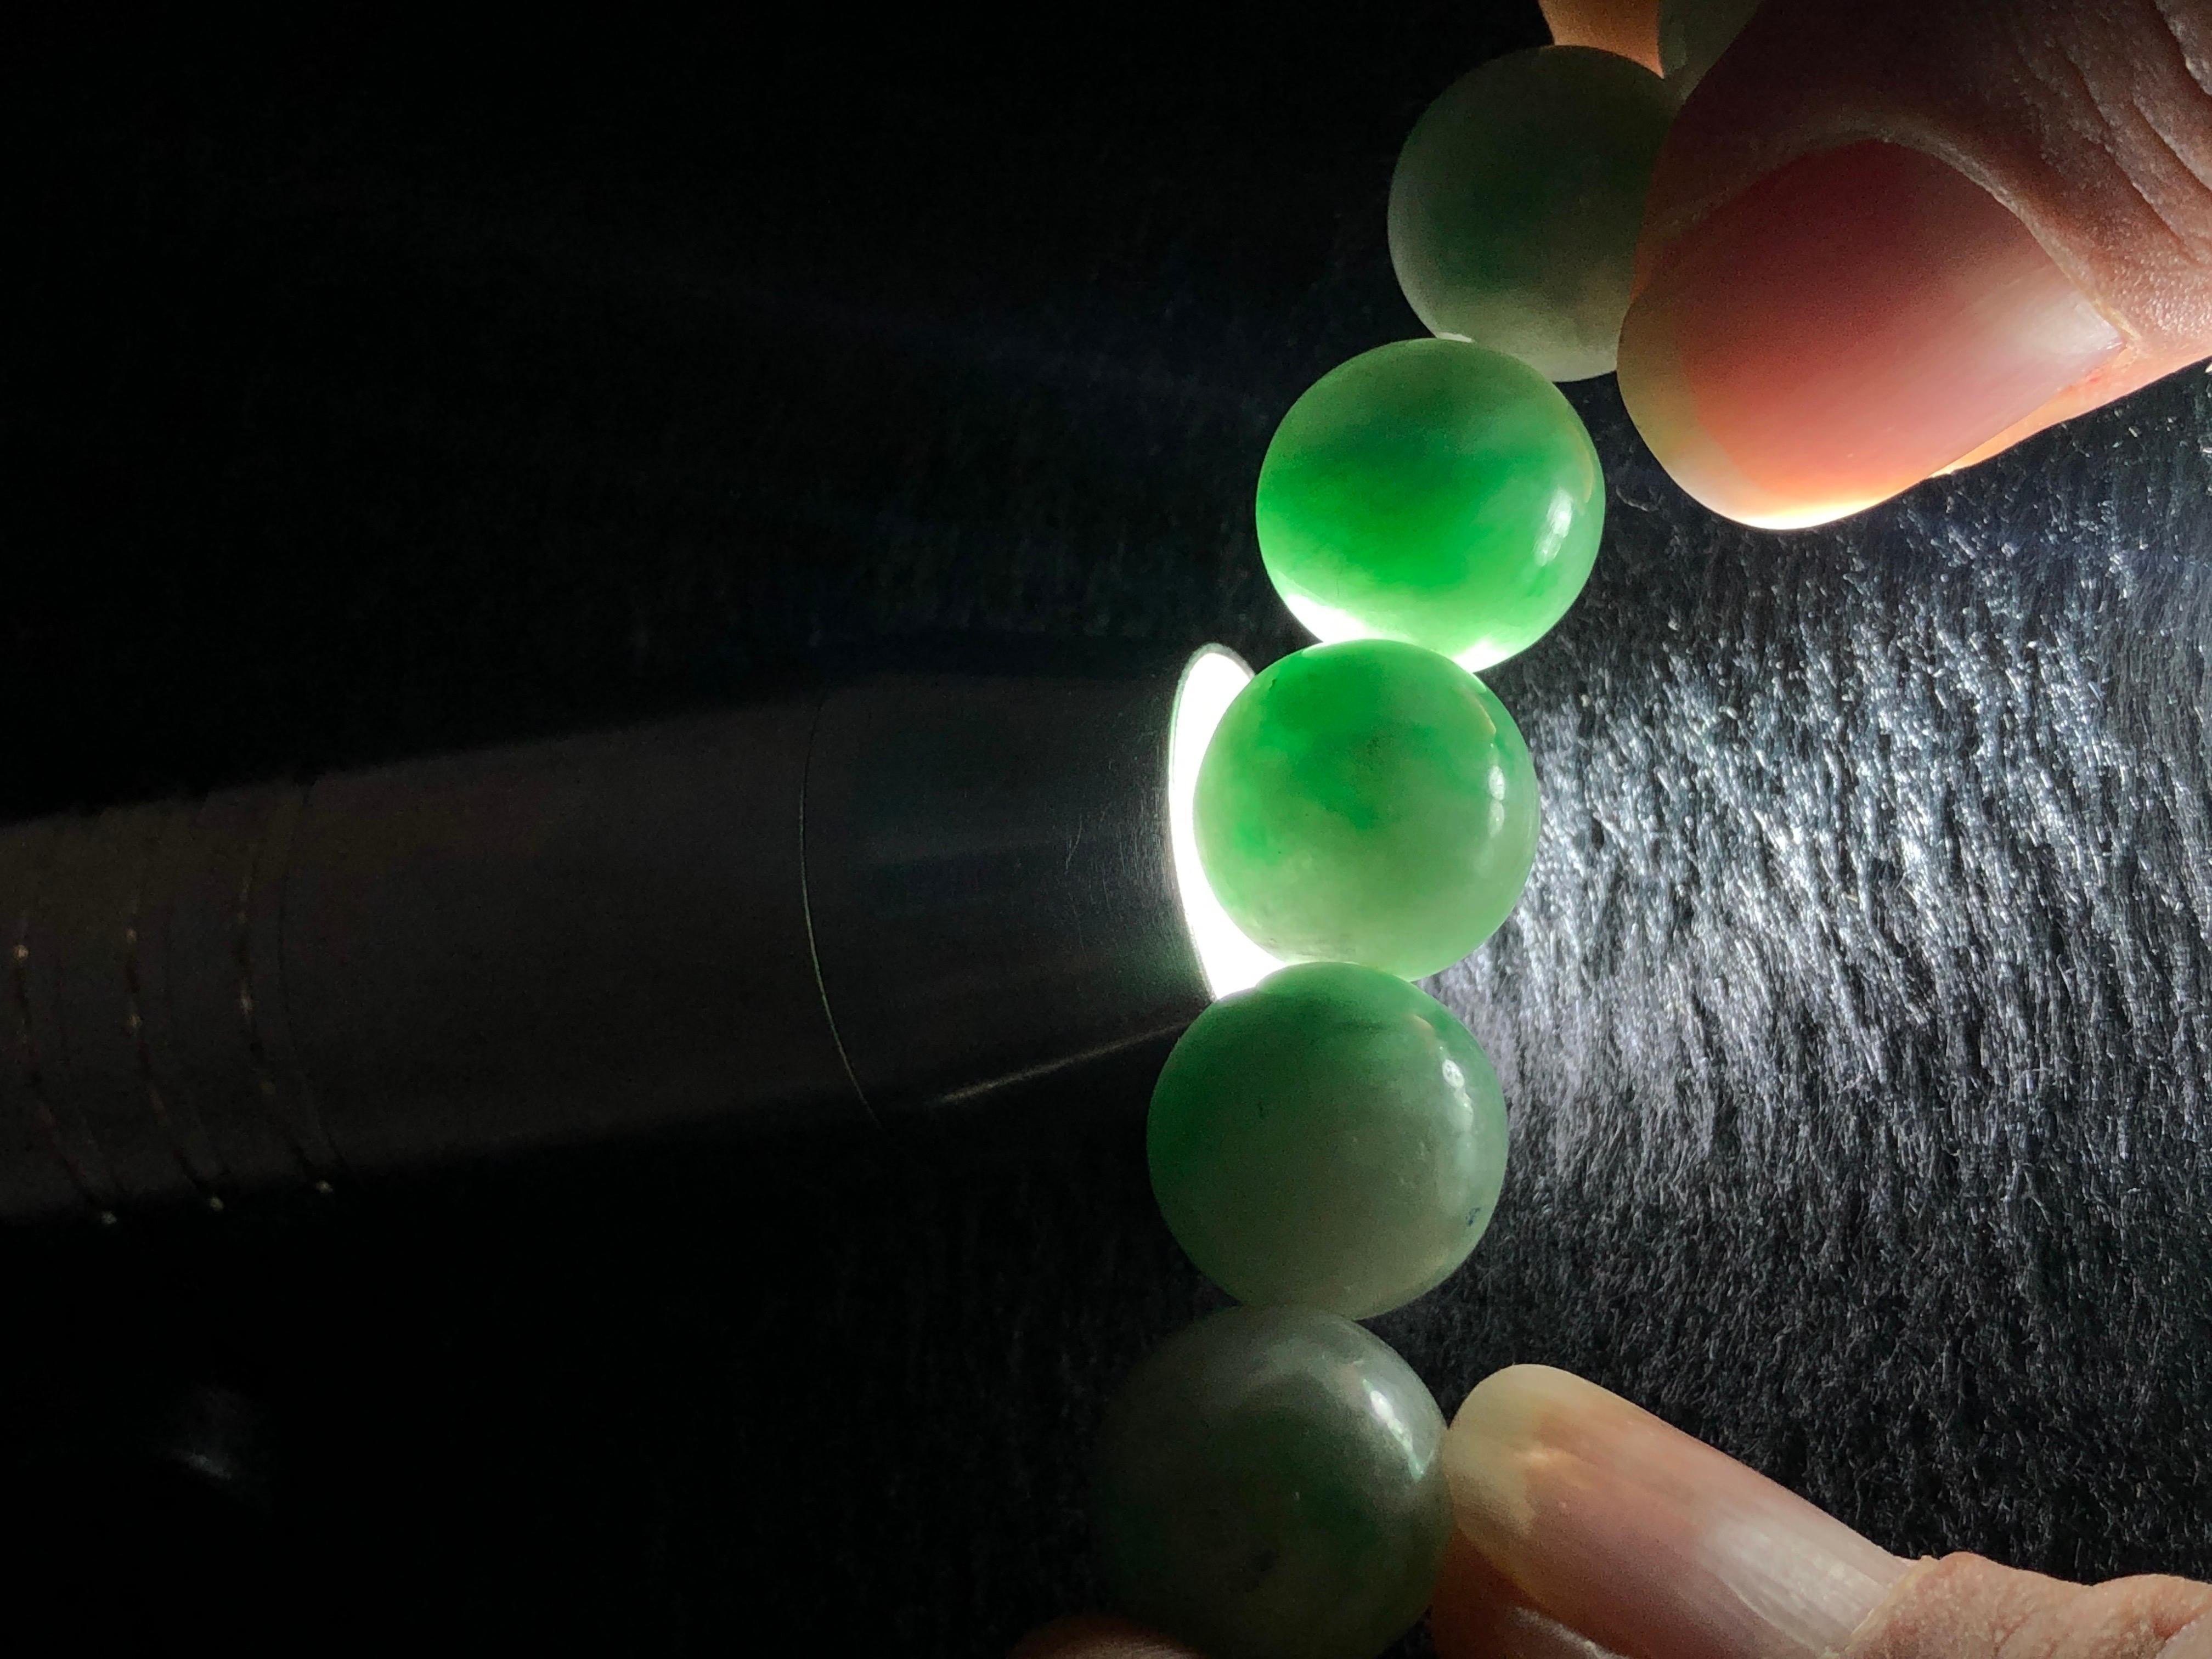 Voici notre exquis bracelet en jadéite verte de type A ! Élevez votre style grâce à l'élégance intemporelle des perles de jadéite véritable, soigneusement fabriquées à la main pour en faire un accessoire éblouissant. Découvrez l'attrait des teintes